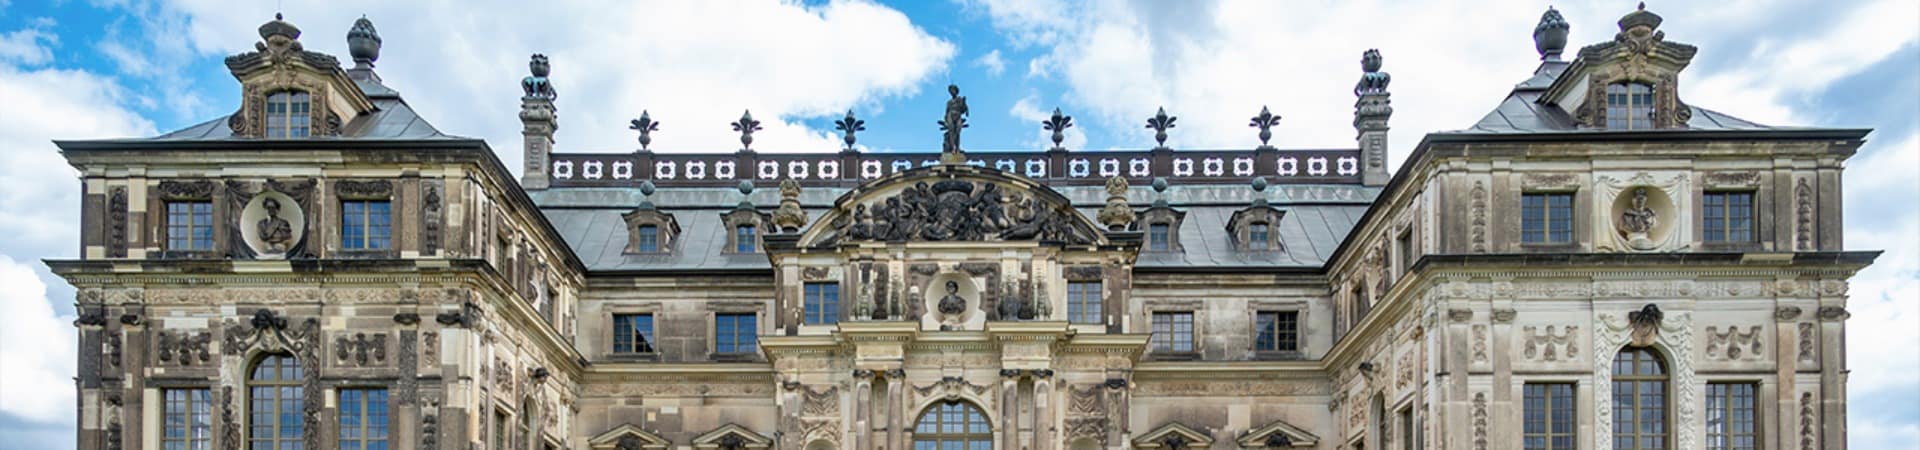 Alemanha dresden palacio jardim